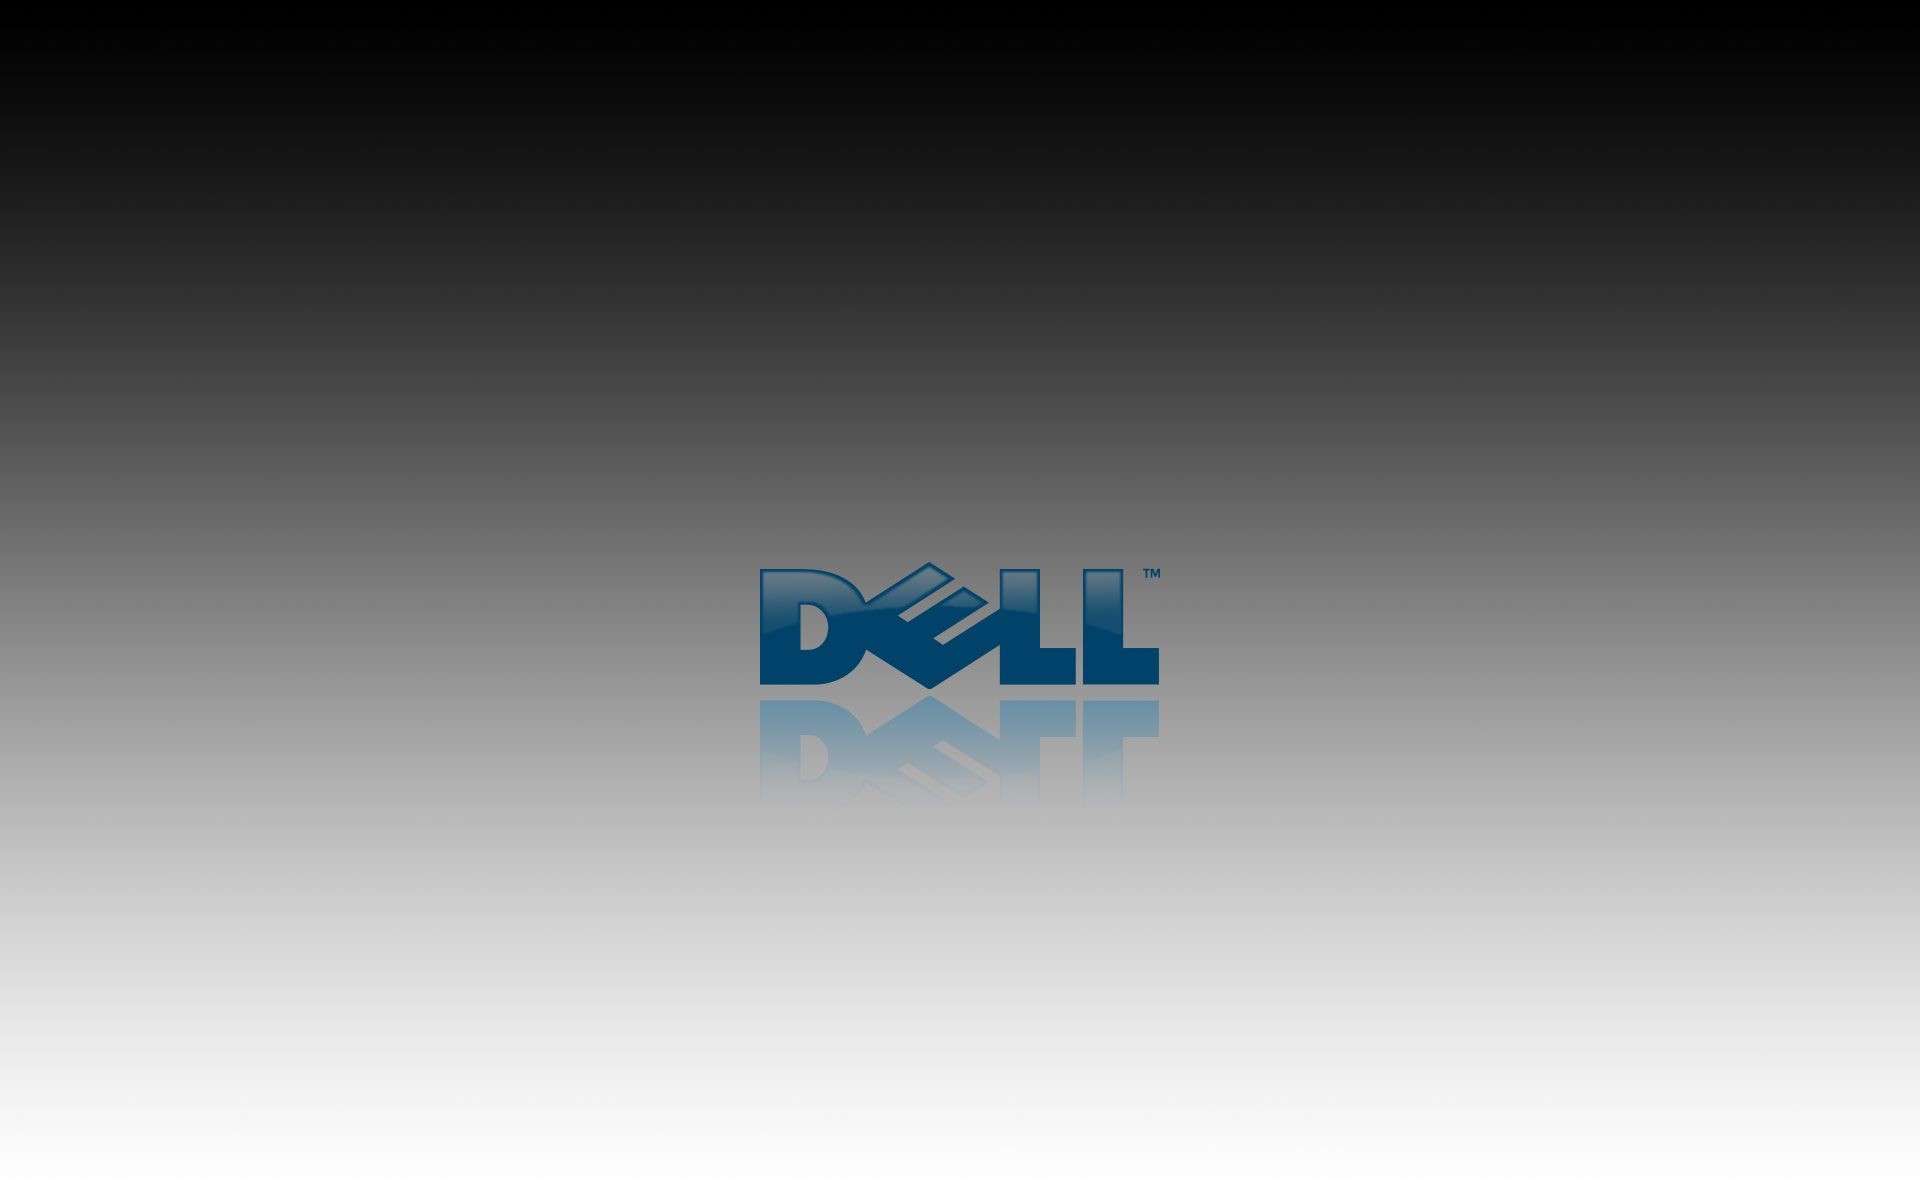 1920x1200 Dell HD Wallpapers Free Wallpaper Downloads Dell HD Desktop